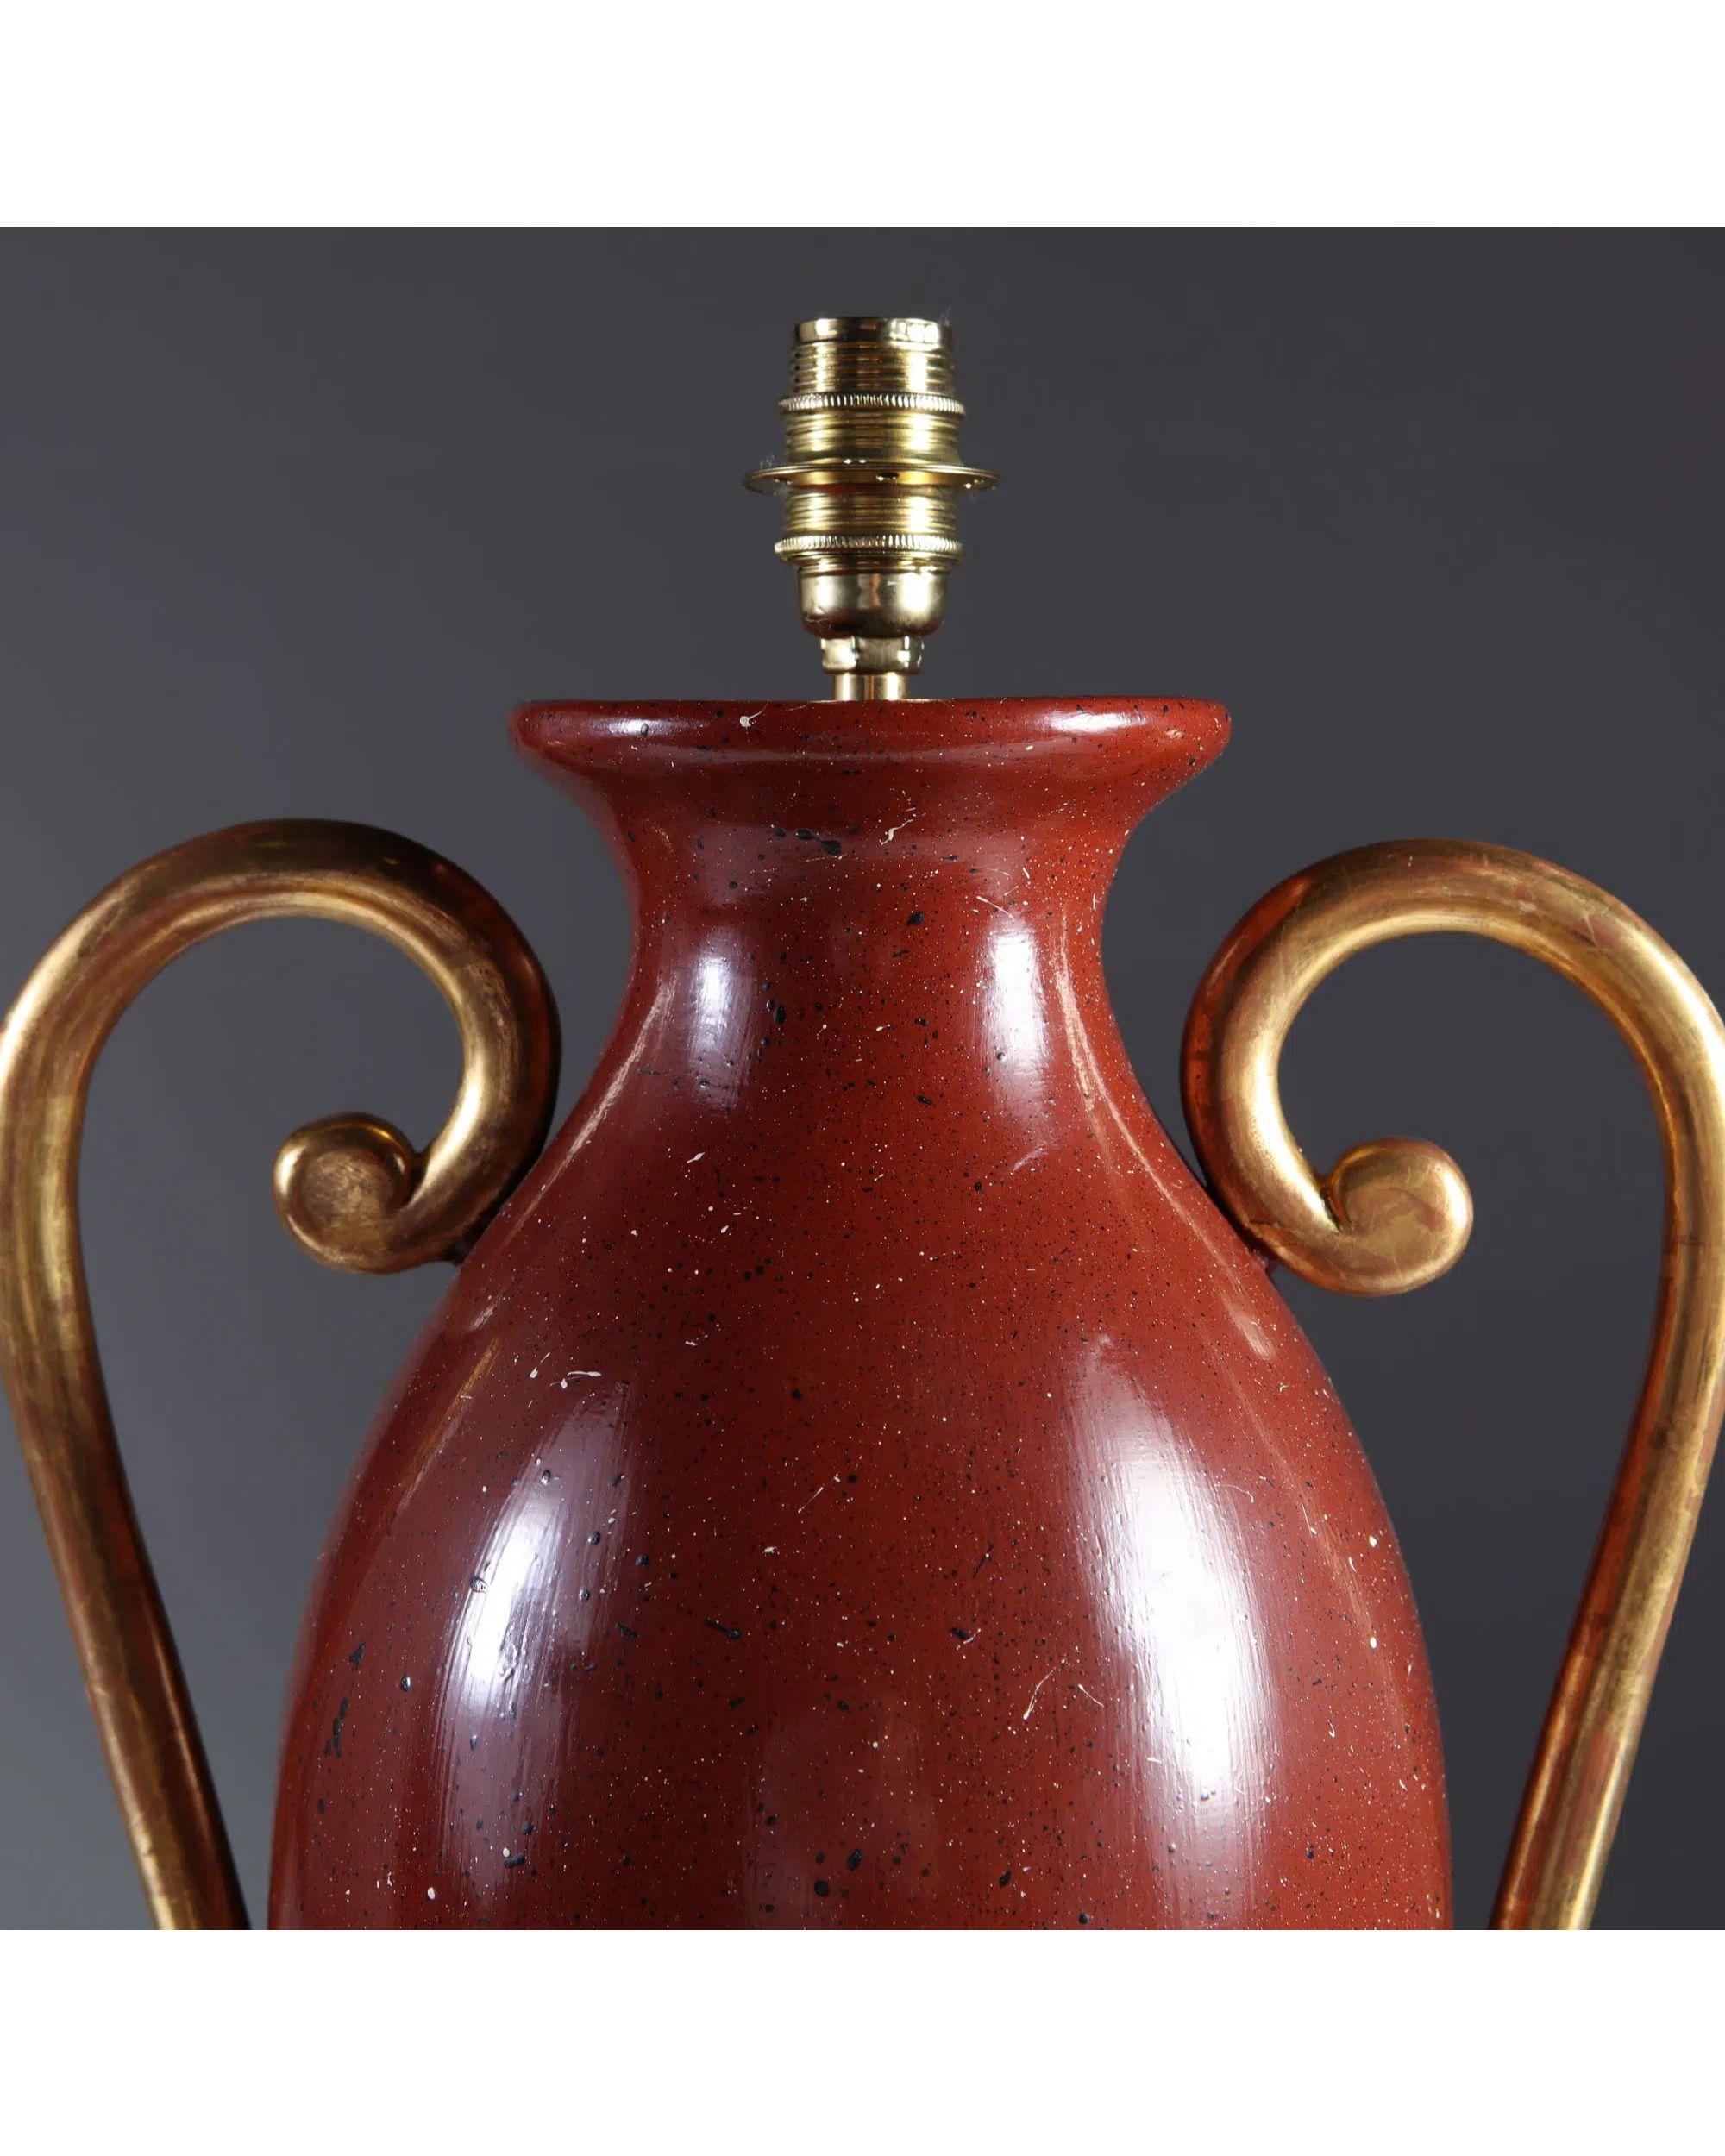 Ein Paar klassischer balusterförmiger, gedrechselter Holzvasen aus der 'Chateau Collection'S. Die Vasen sind mit Porphyrimitat bemalt, die Arme sind mit Gesso überzogen und mit Blattgold vergoldet.

Porphyr- und Giltwood-Urnen als